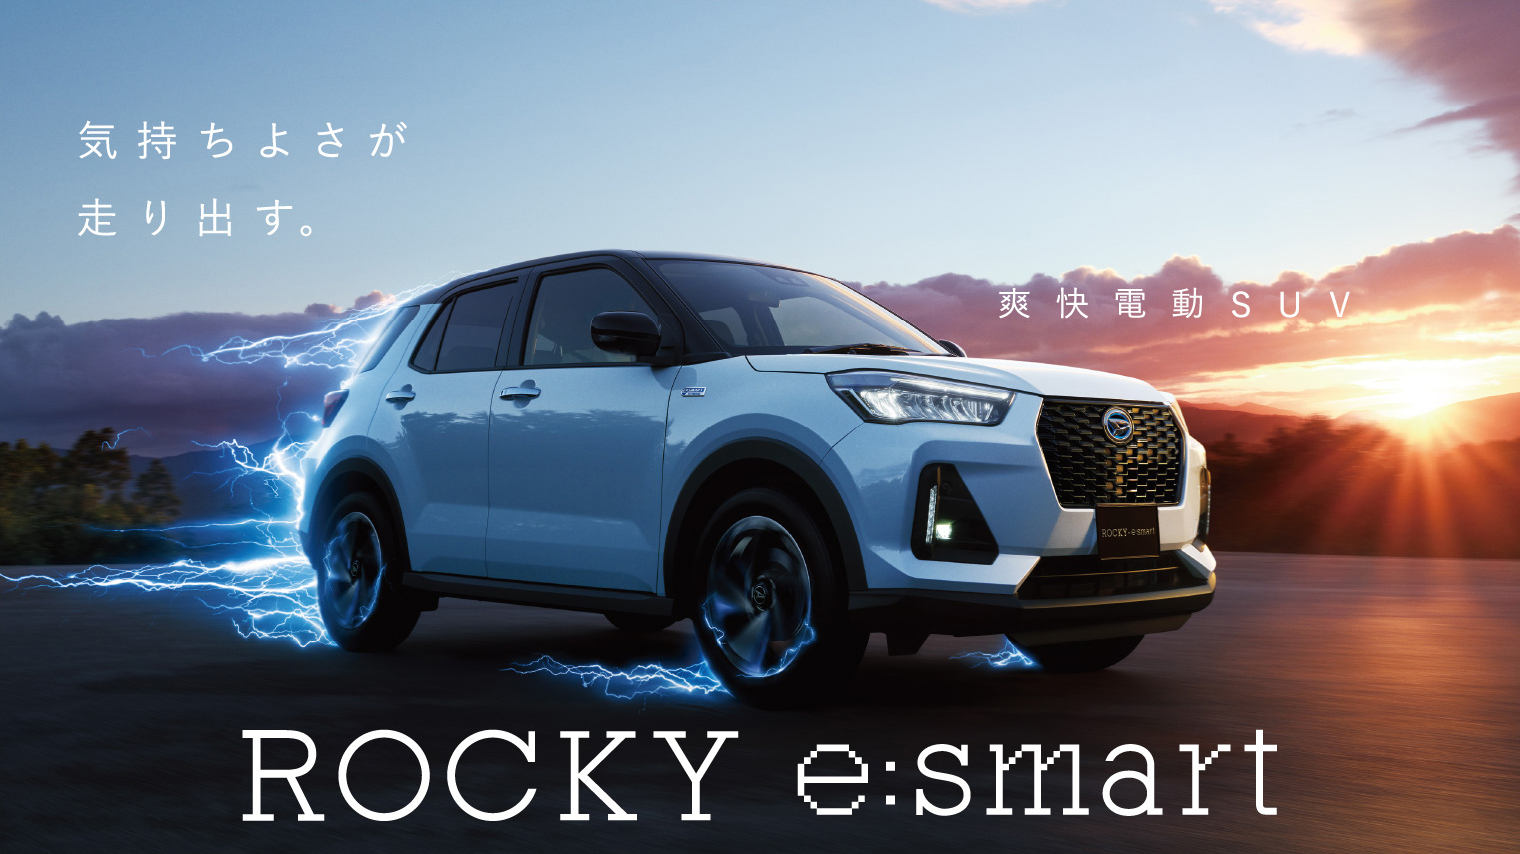 気持ちよさが走り出す爽快電動SUV ROCKY e:smart